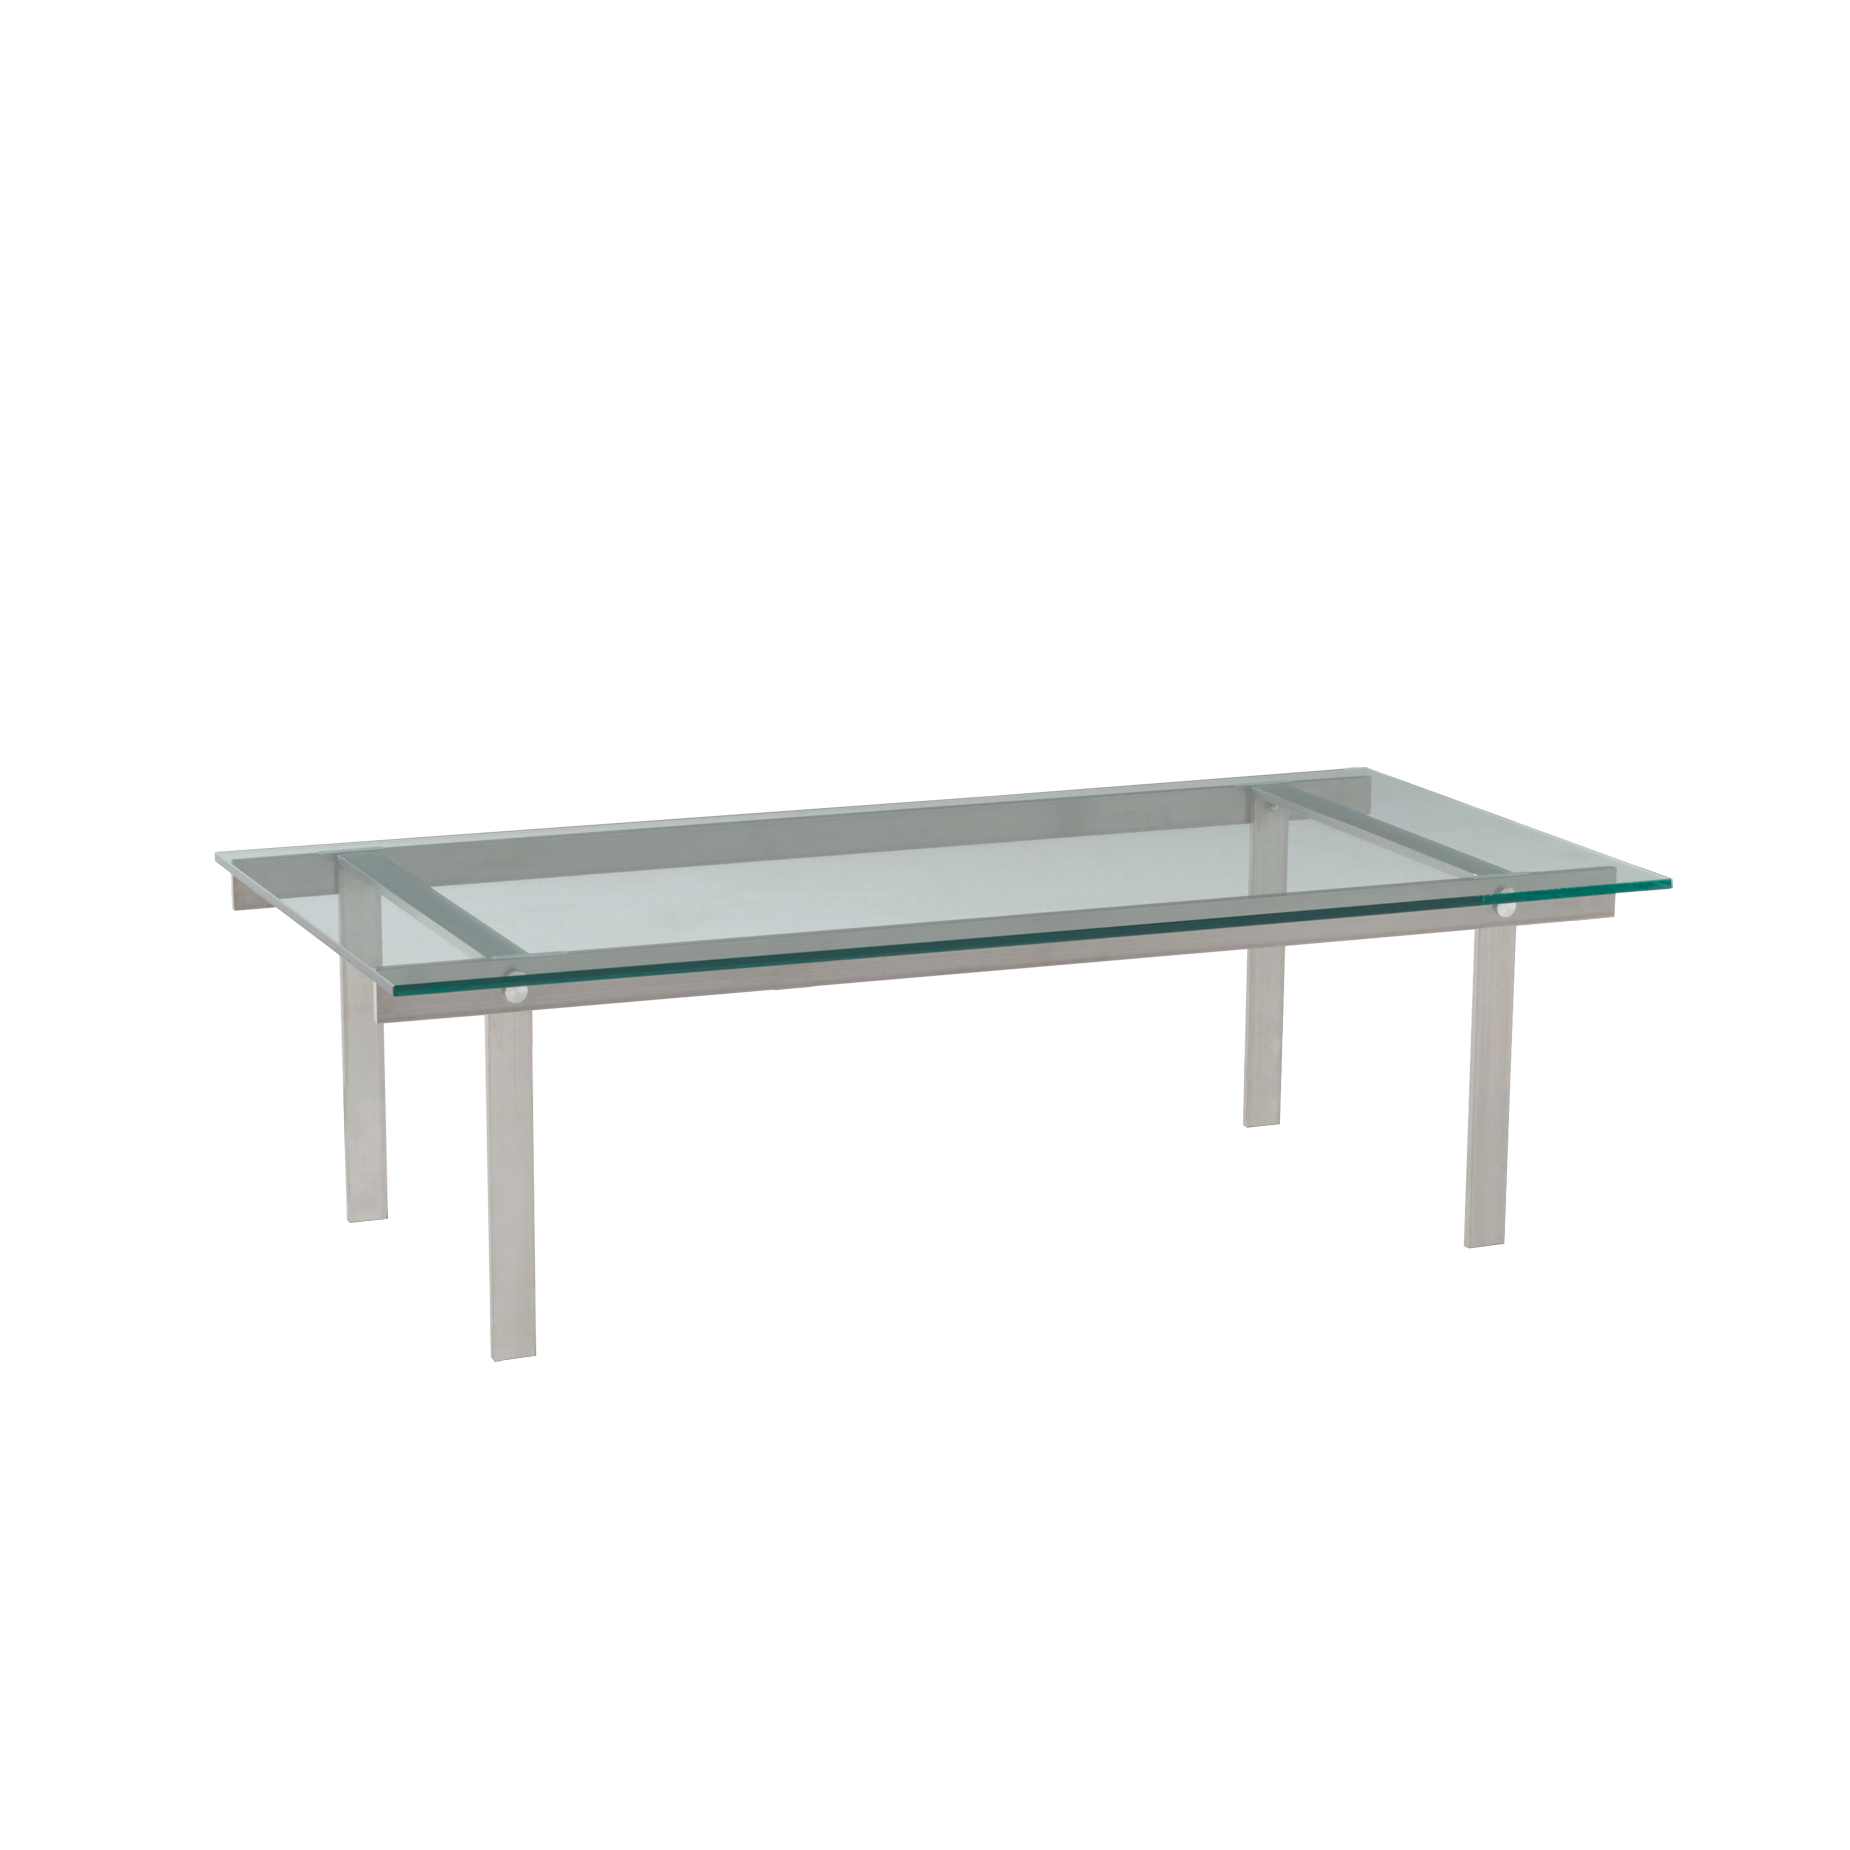 (주)도이치DOICH 공방 ®   DENING table  도이치 데닝 소파테이블  120Cm / 강화유리